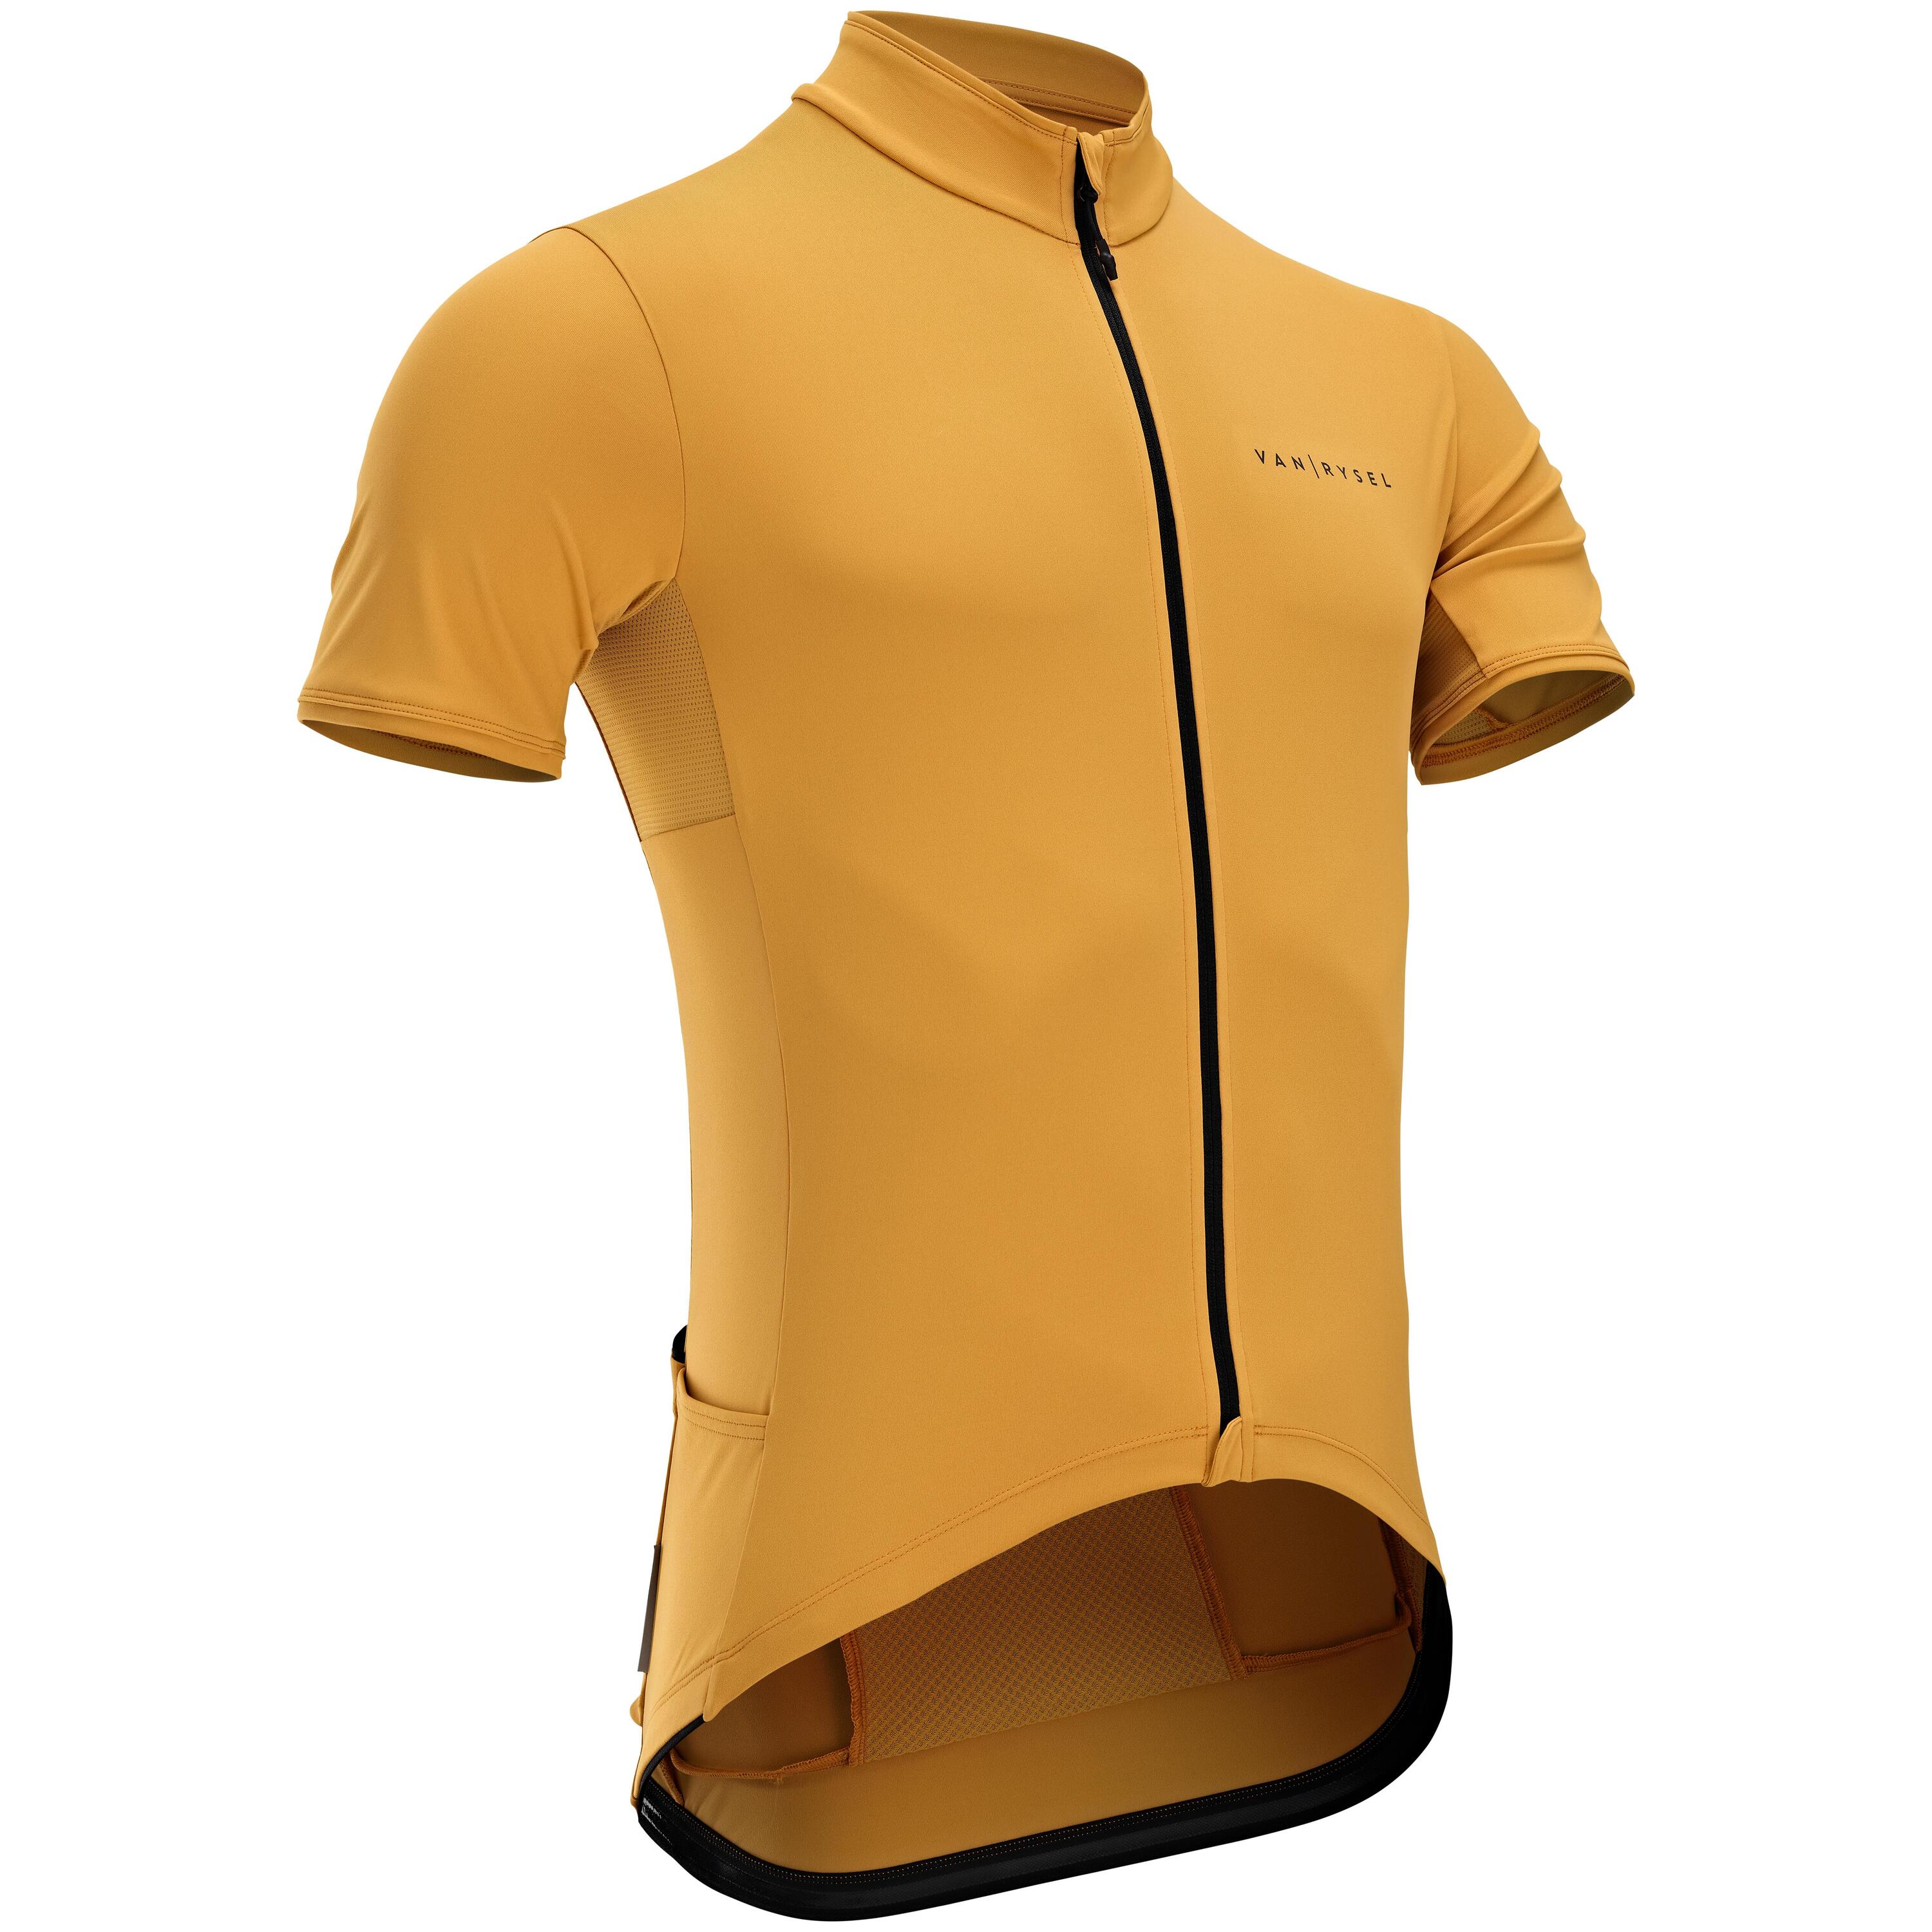 Men's Short-Sleeved Road Cycling Summer Jersey RC500 - Ochre 2/7